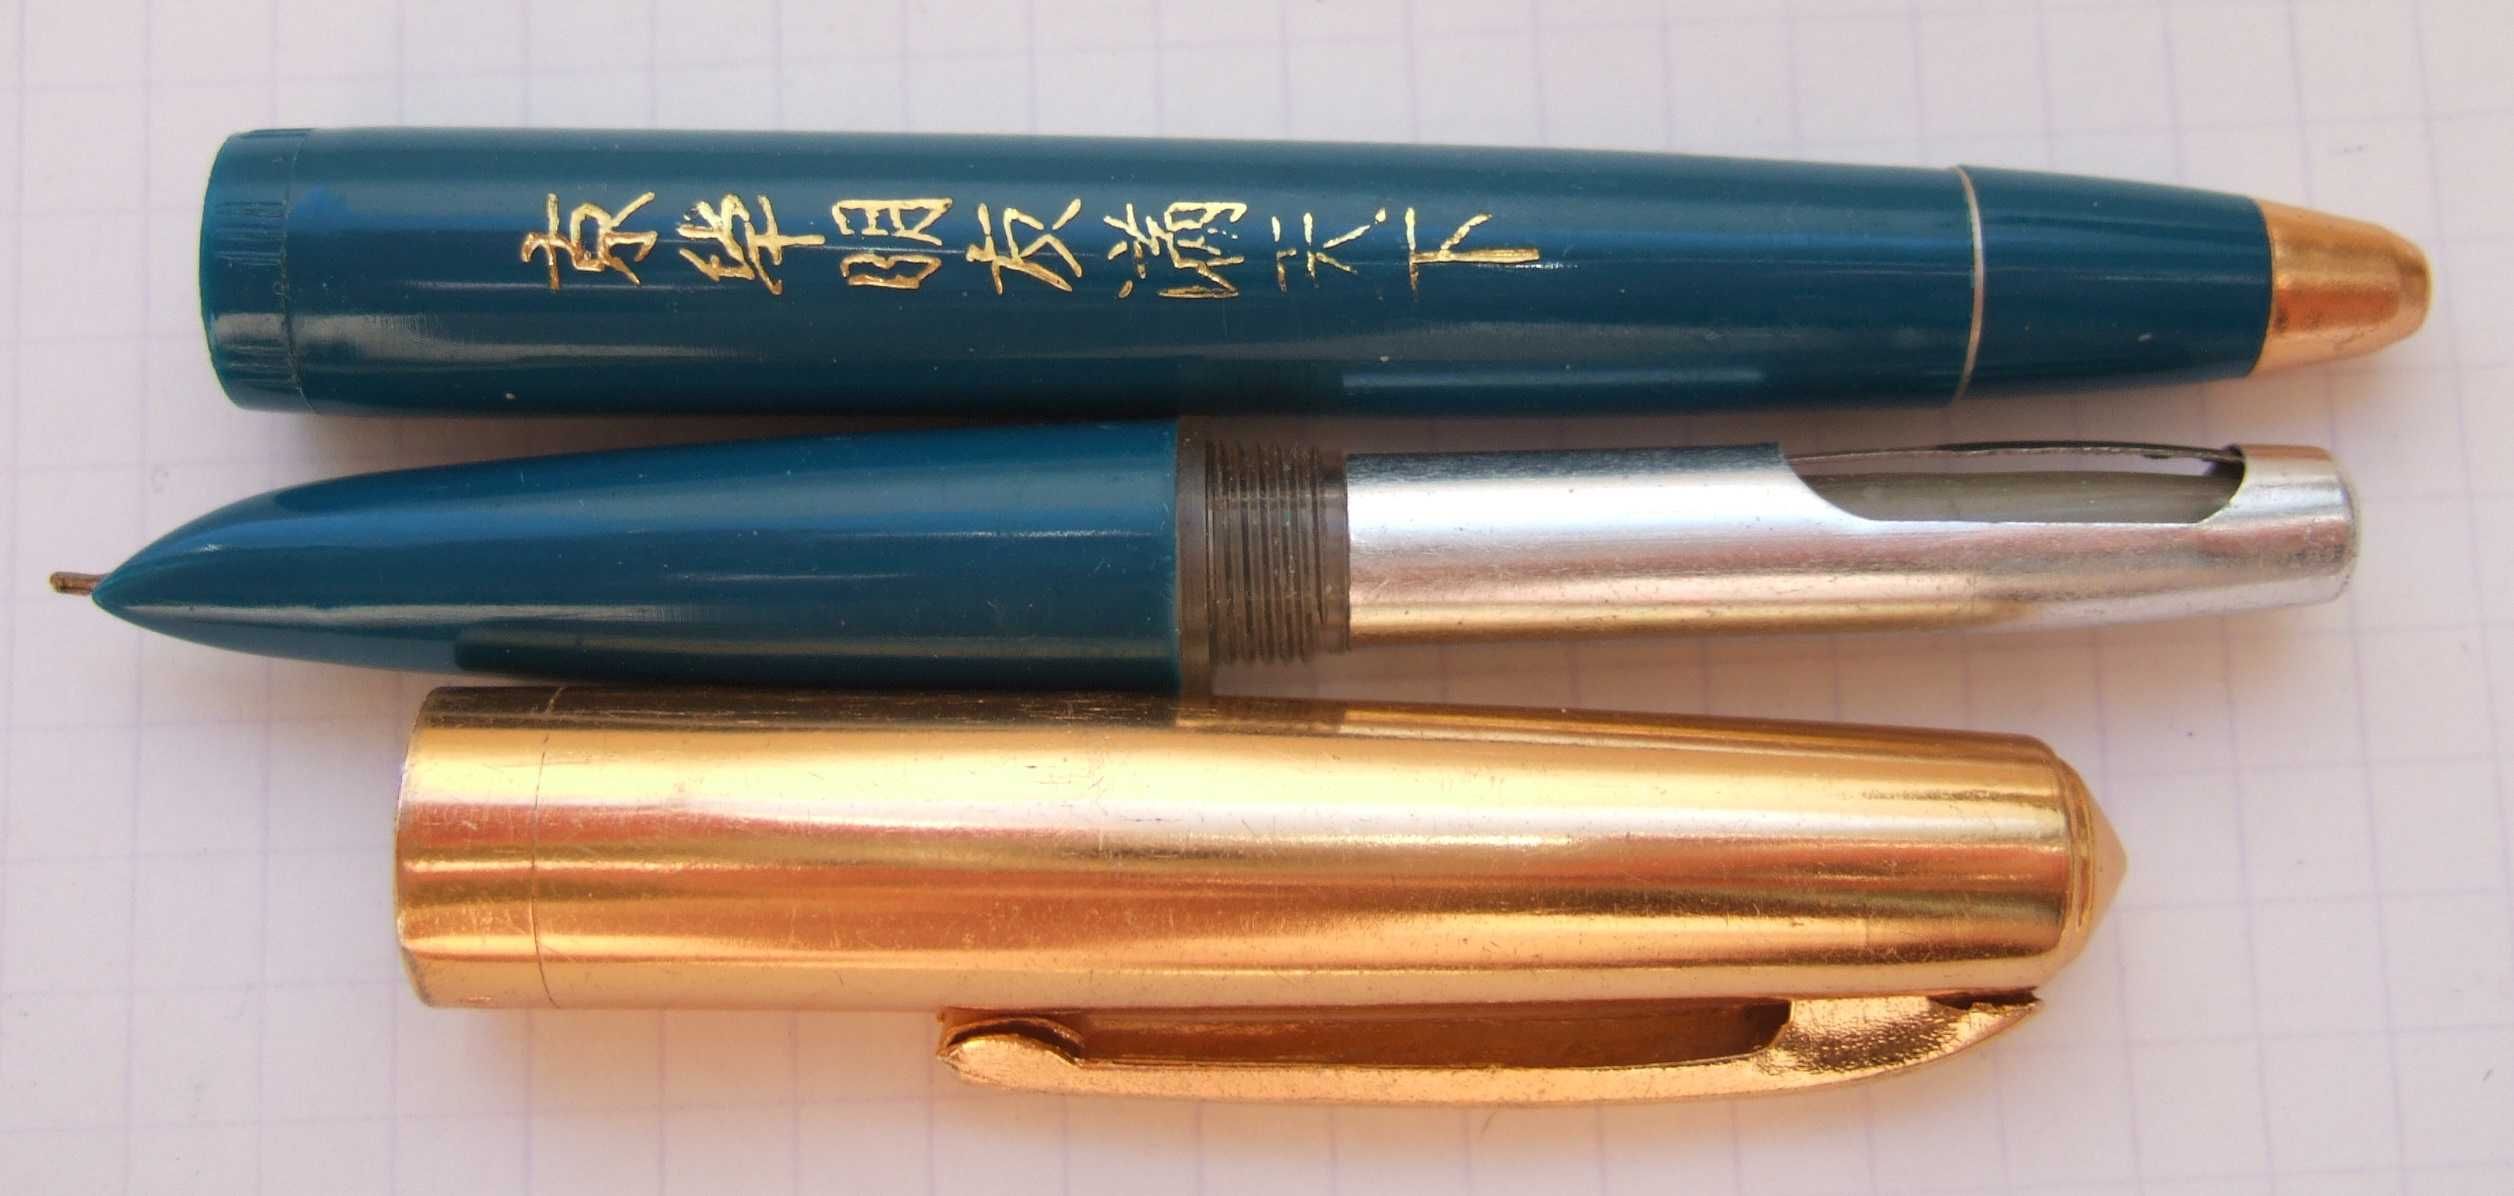 Нова перова ручка Wing Sung двосторння. Пише м'яко, тонко і насичено